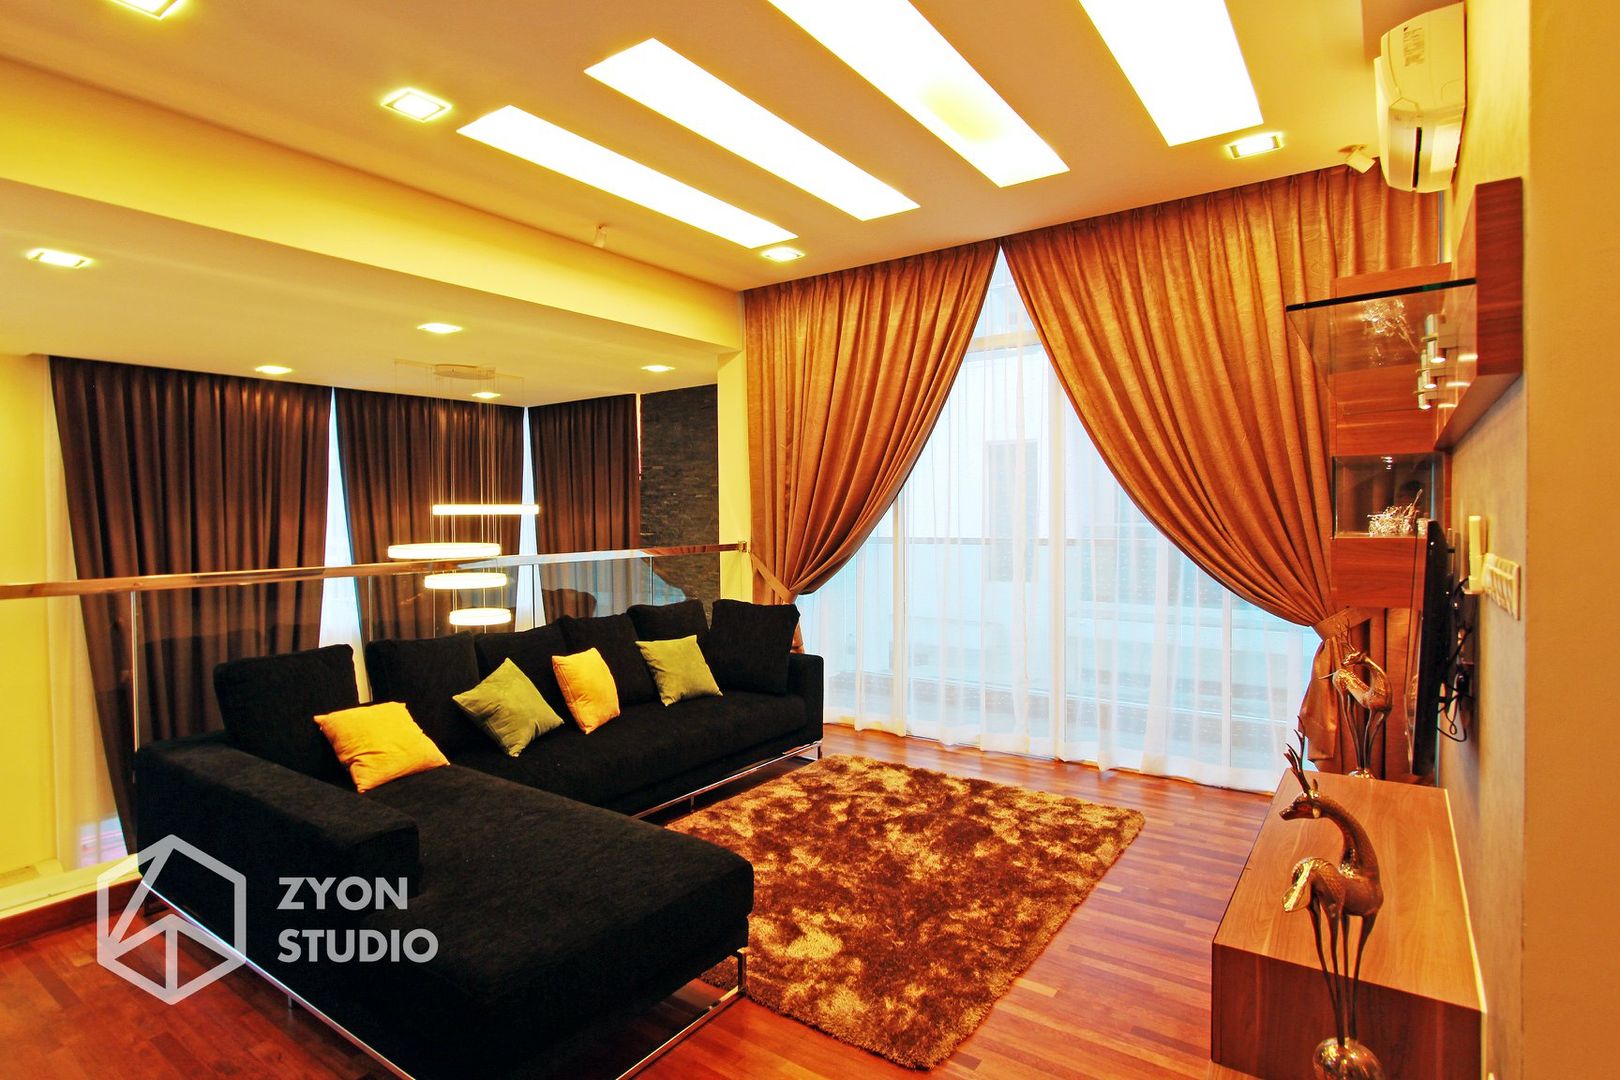 Kiara Residence Puchong, ZYON STUDIO SDN BHD (fka Zyon Interior Design Sdn Bhd) ZYON STUDIO SDN BHD (fka Zyon Interior Design Sdn Bhd) Ruang Keluarga Modern